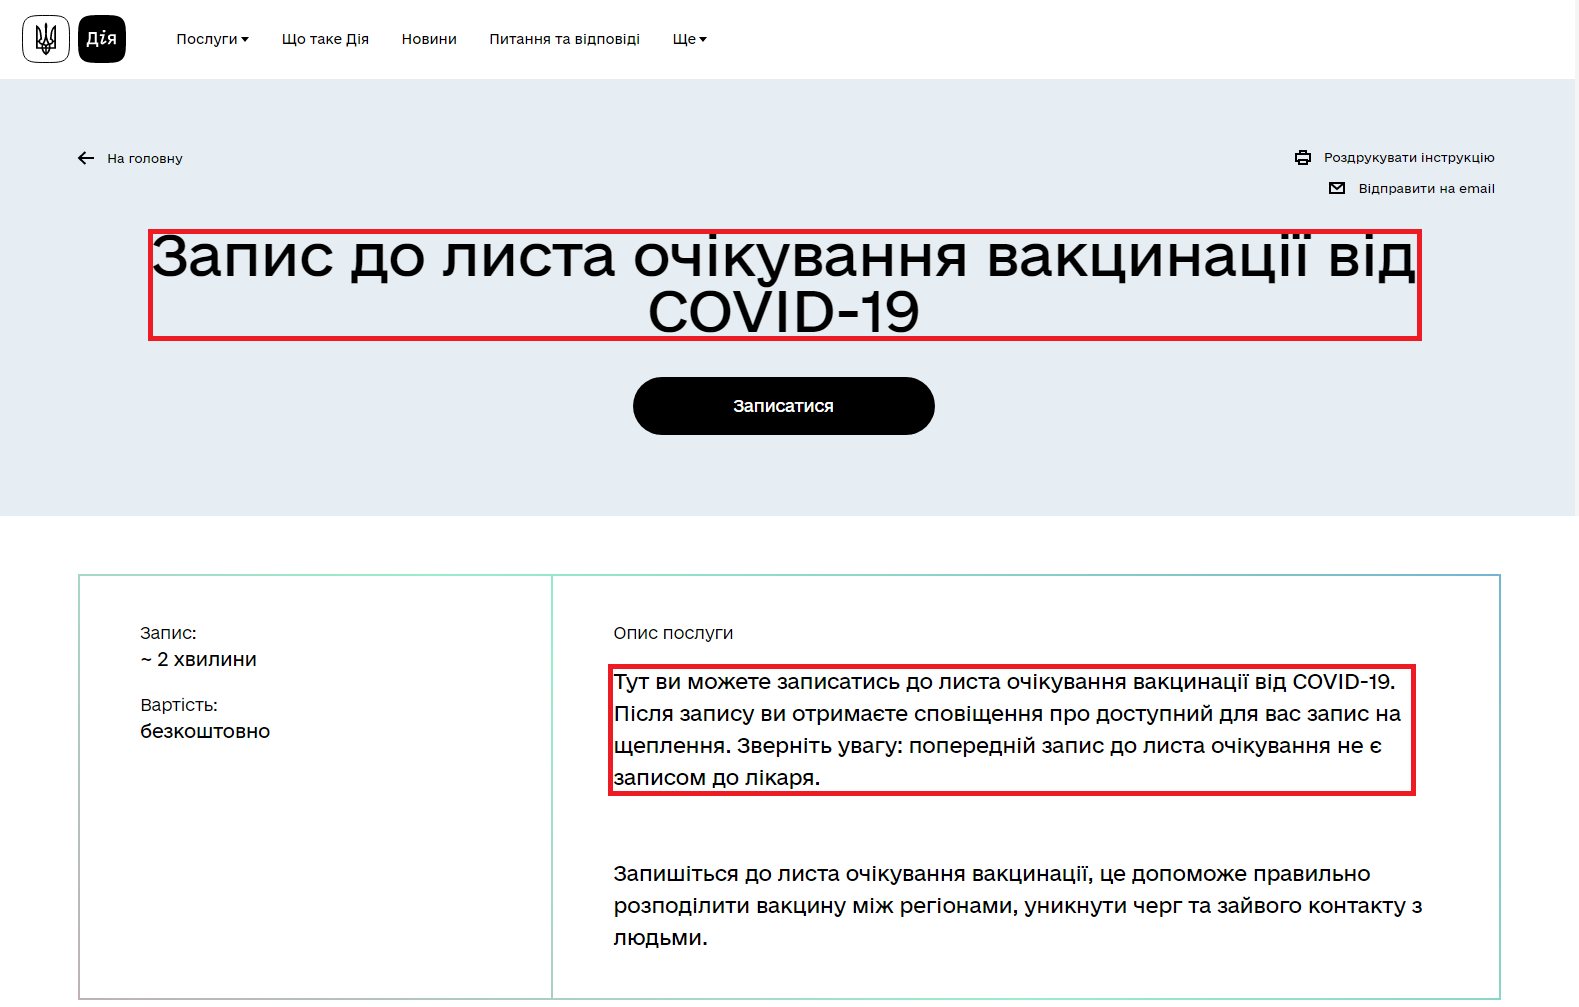 https://diia.gov.ua/services/zapis-do-lista-ochikuvannya-vakcinaciyi-vid-covid-19